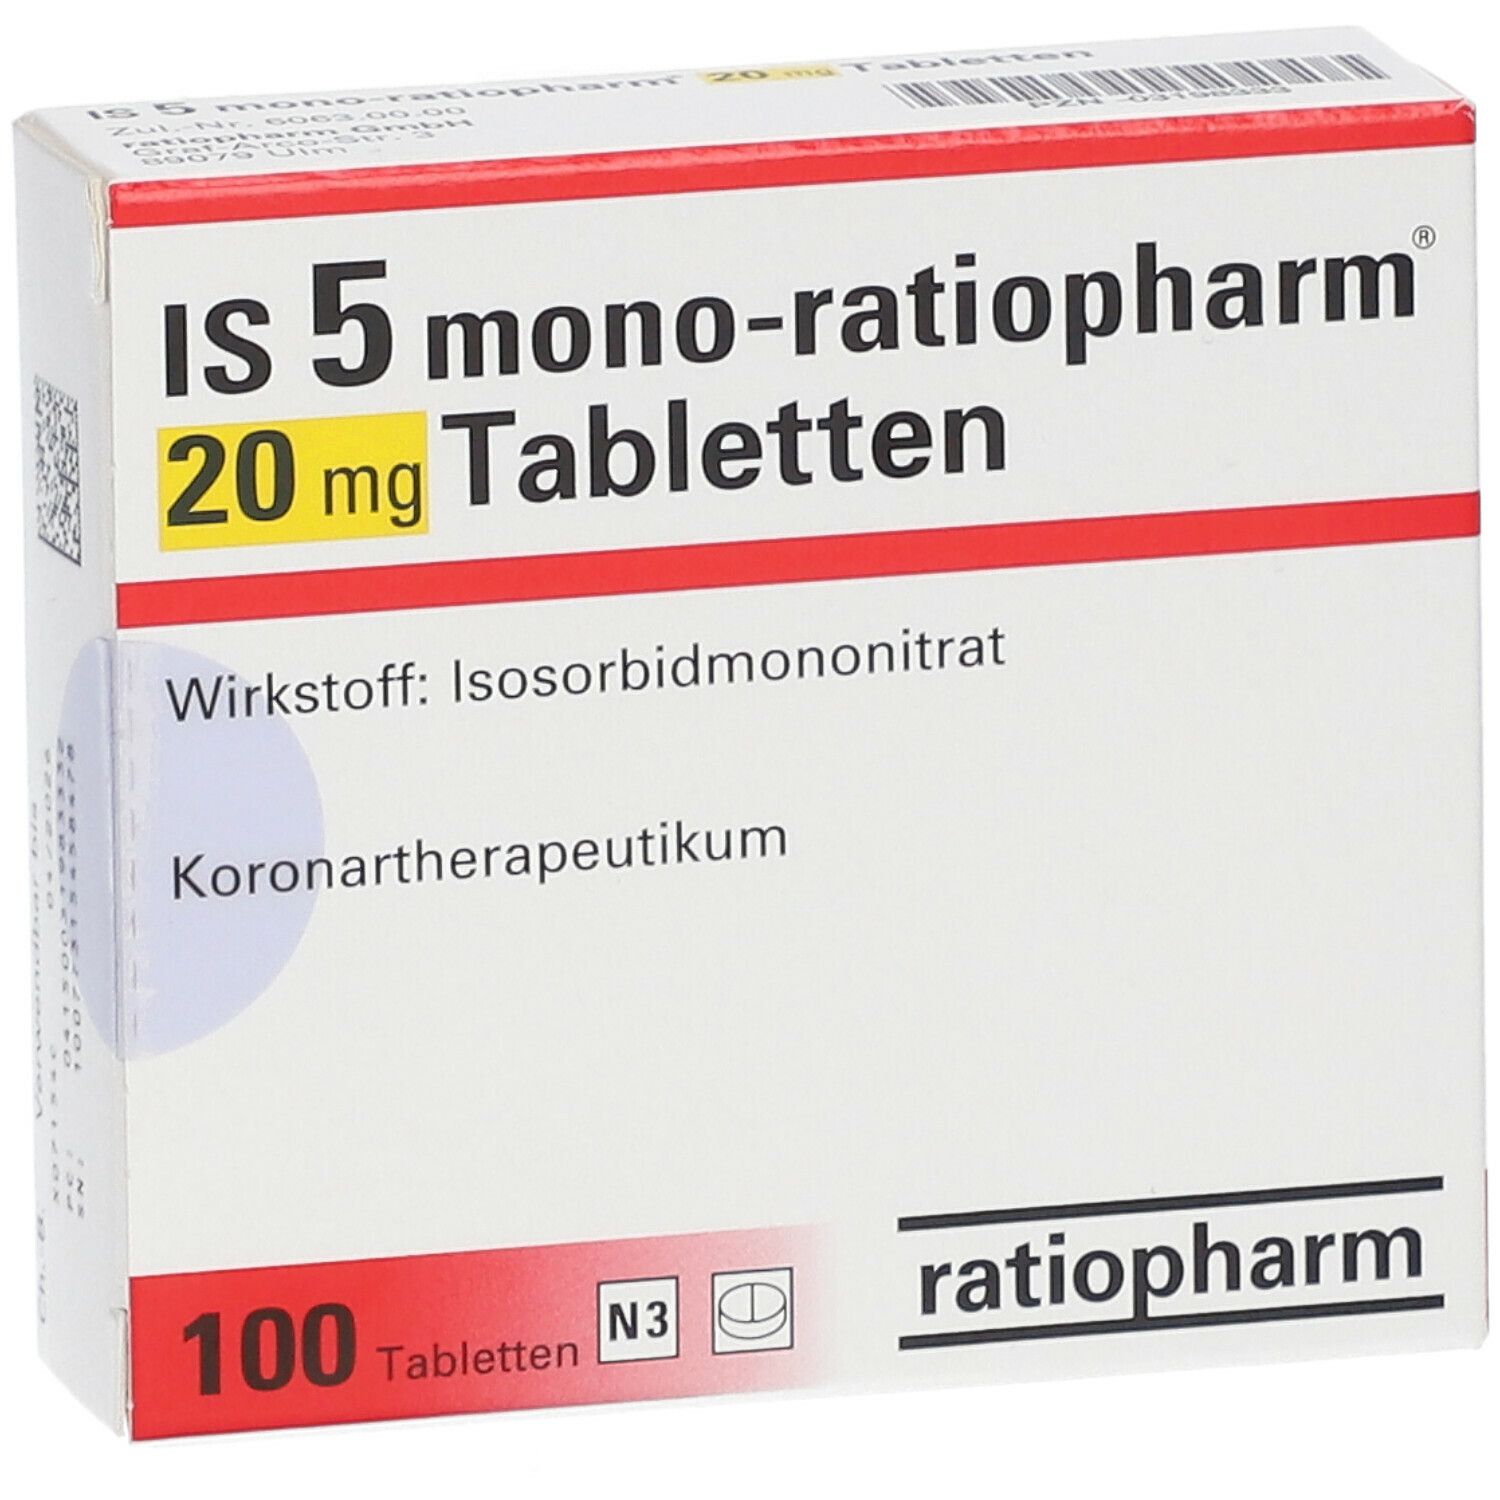 IS 5 mono-ratiopharm® 20 mg